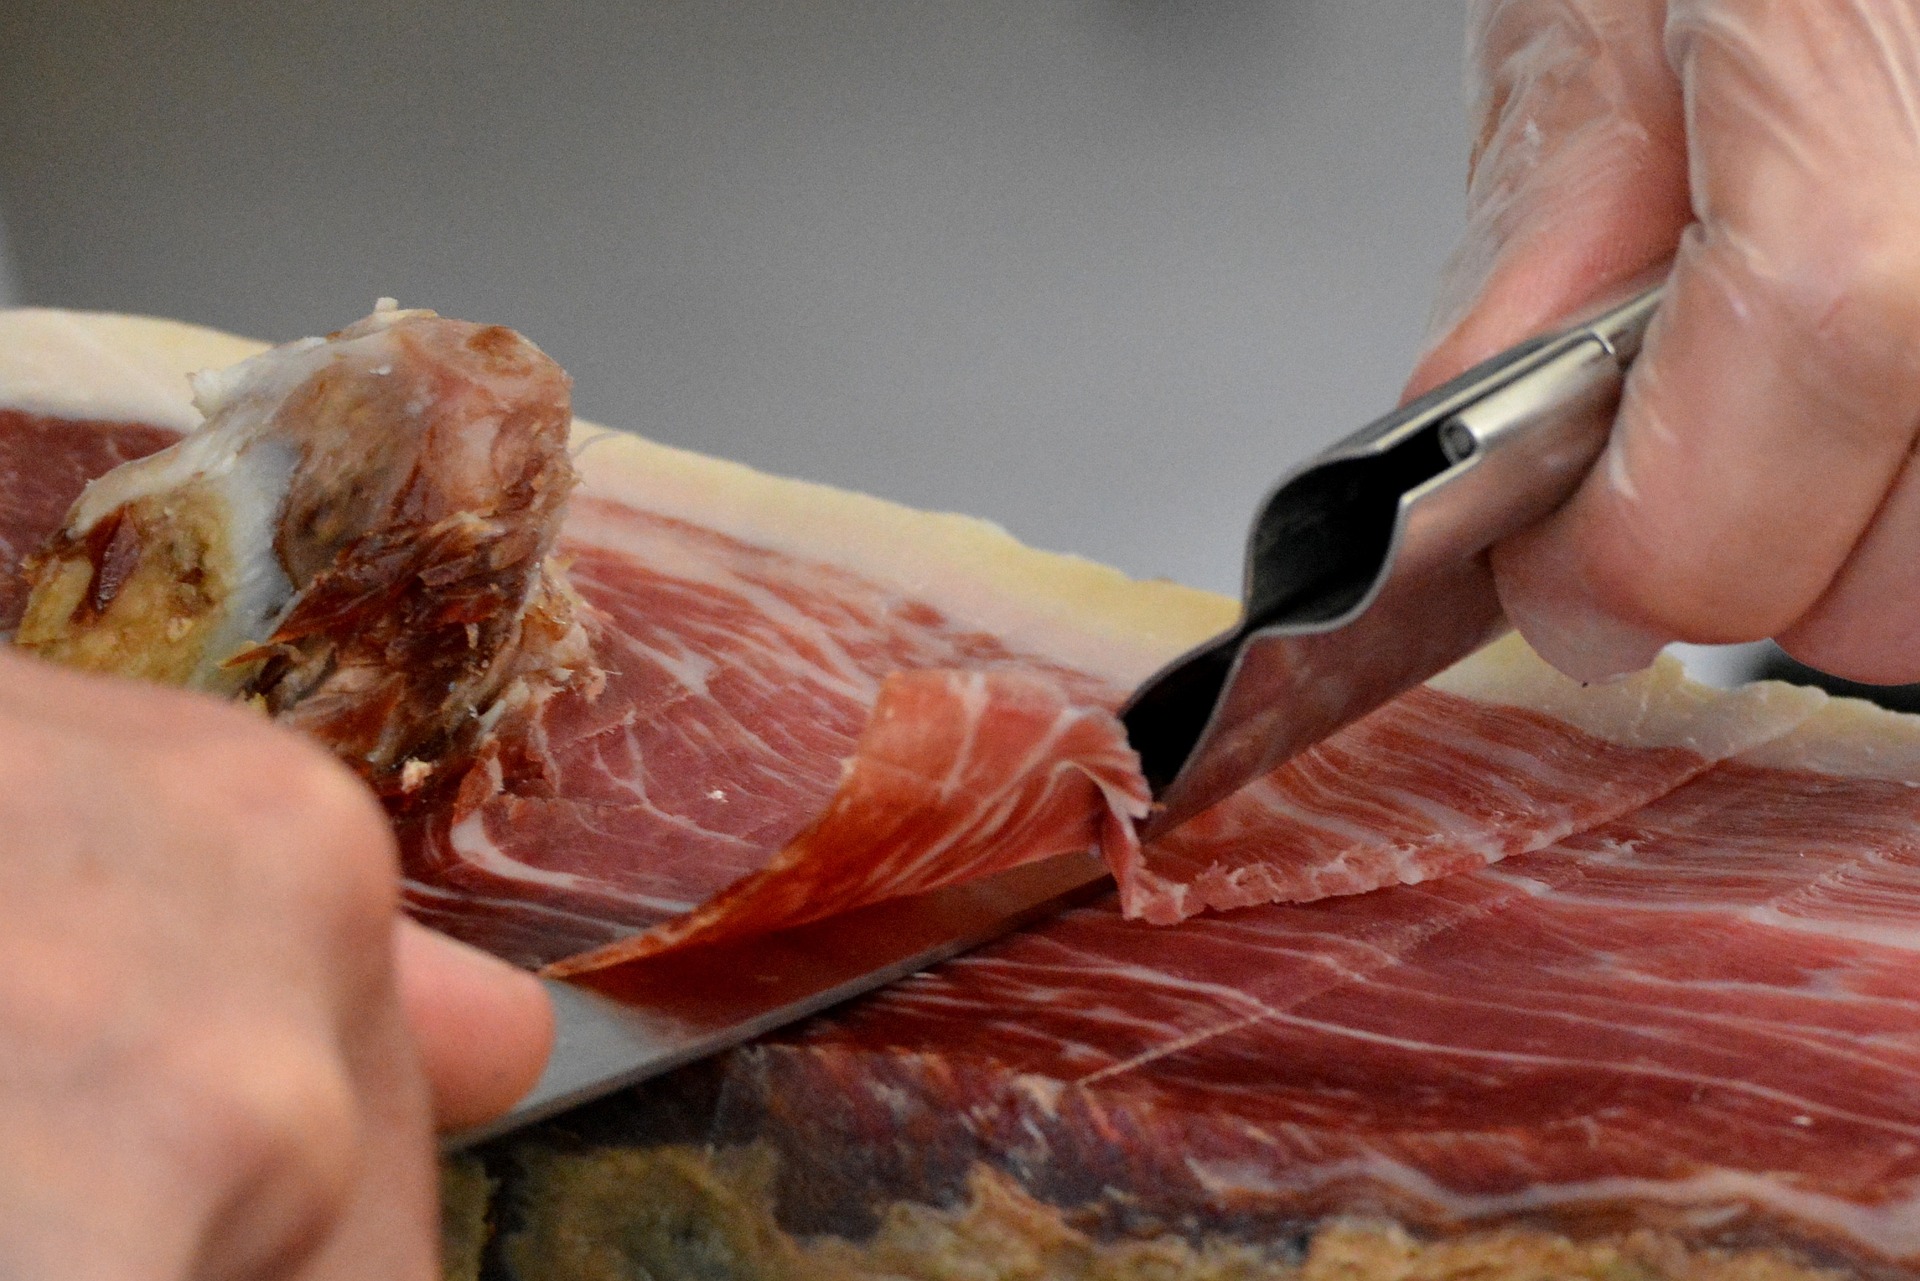 Wilk do mięsa – czy roboty mogą zastąpić ręczne mielenie mięsa?